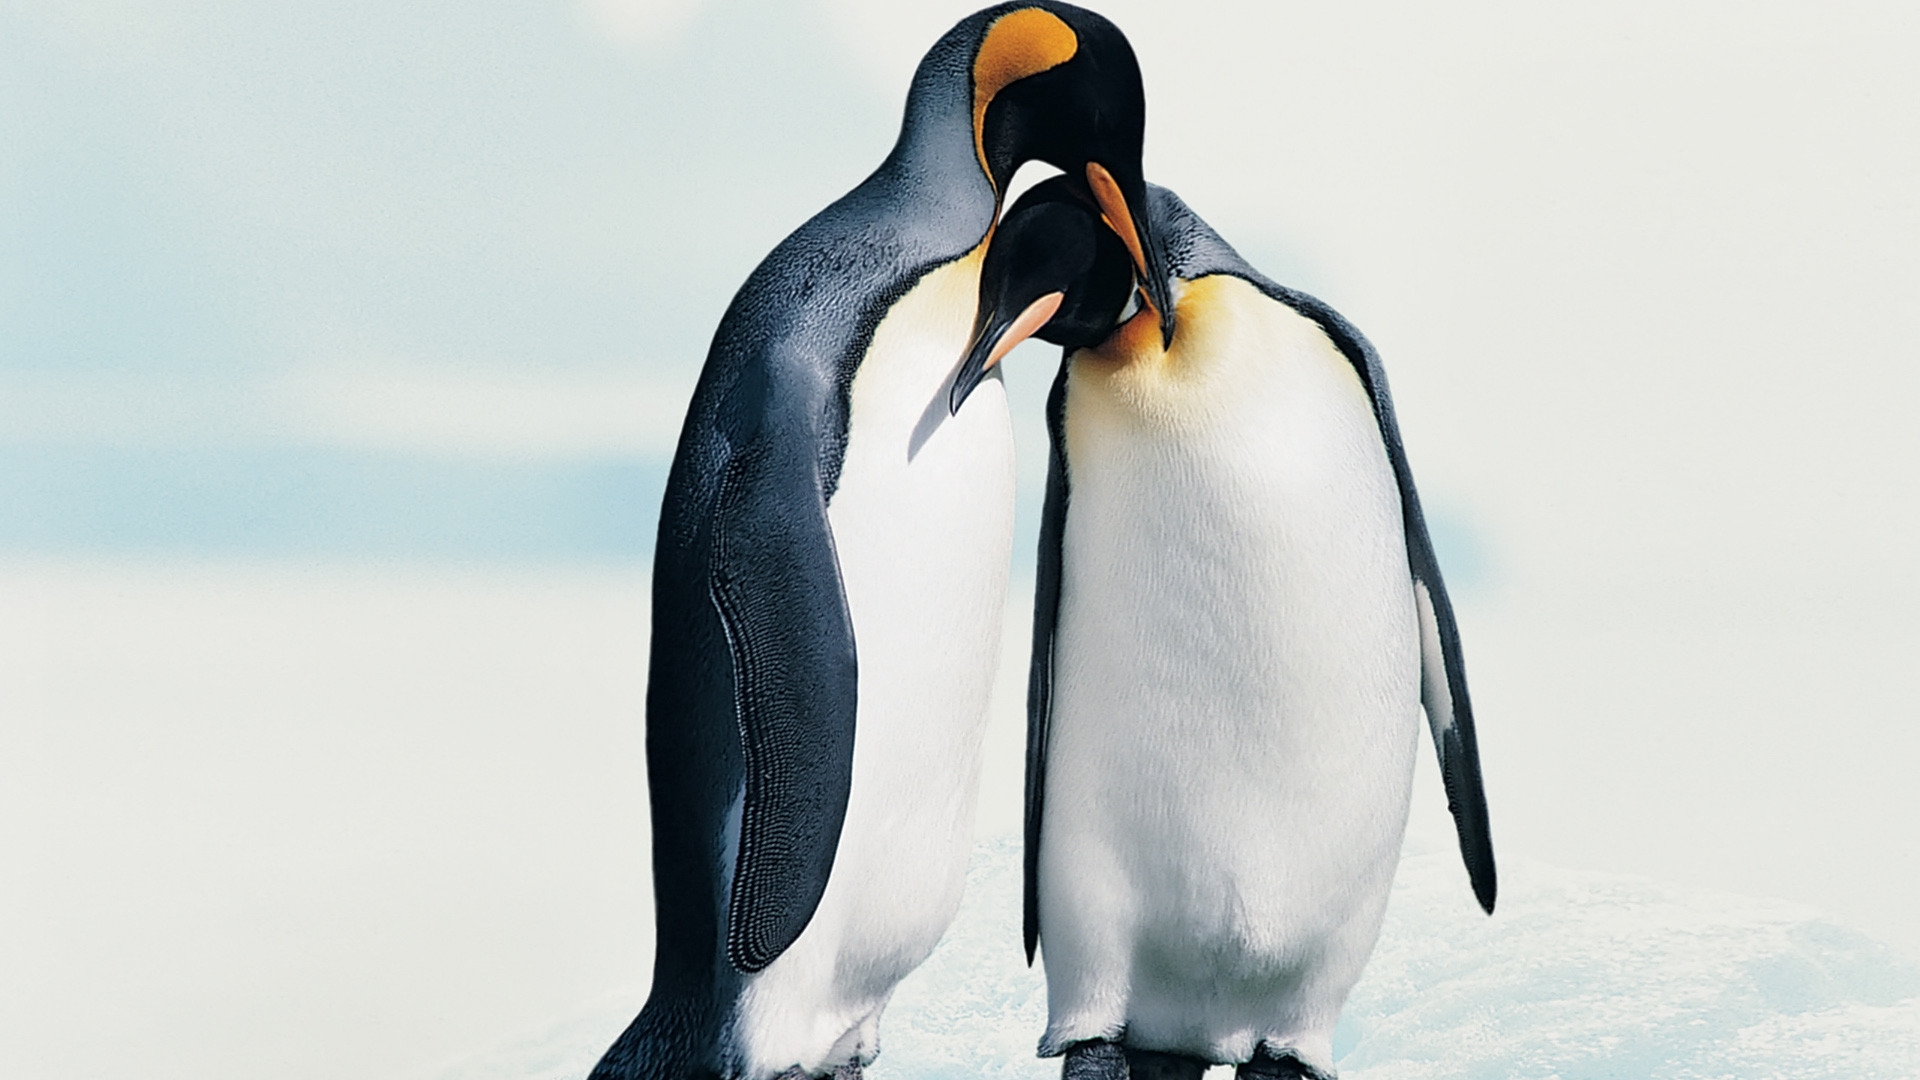 Penguins in Love for 1920 x 1080 HDTV 1080p resolution